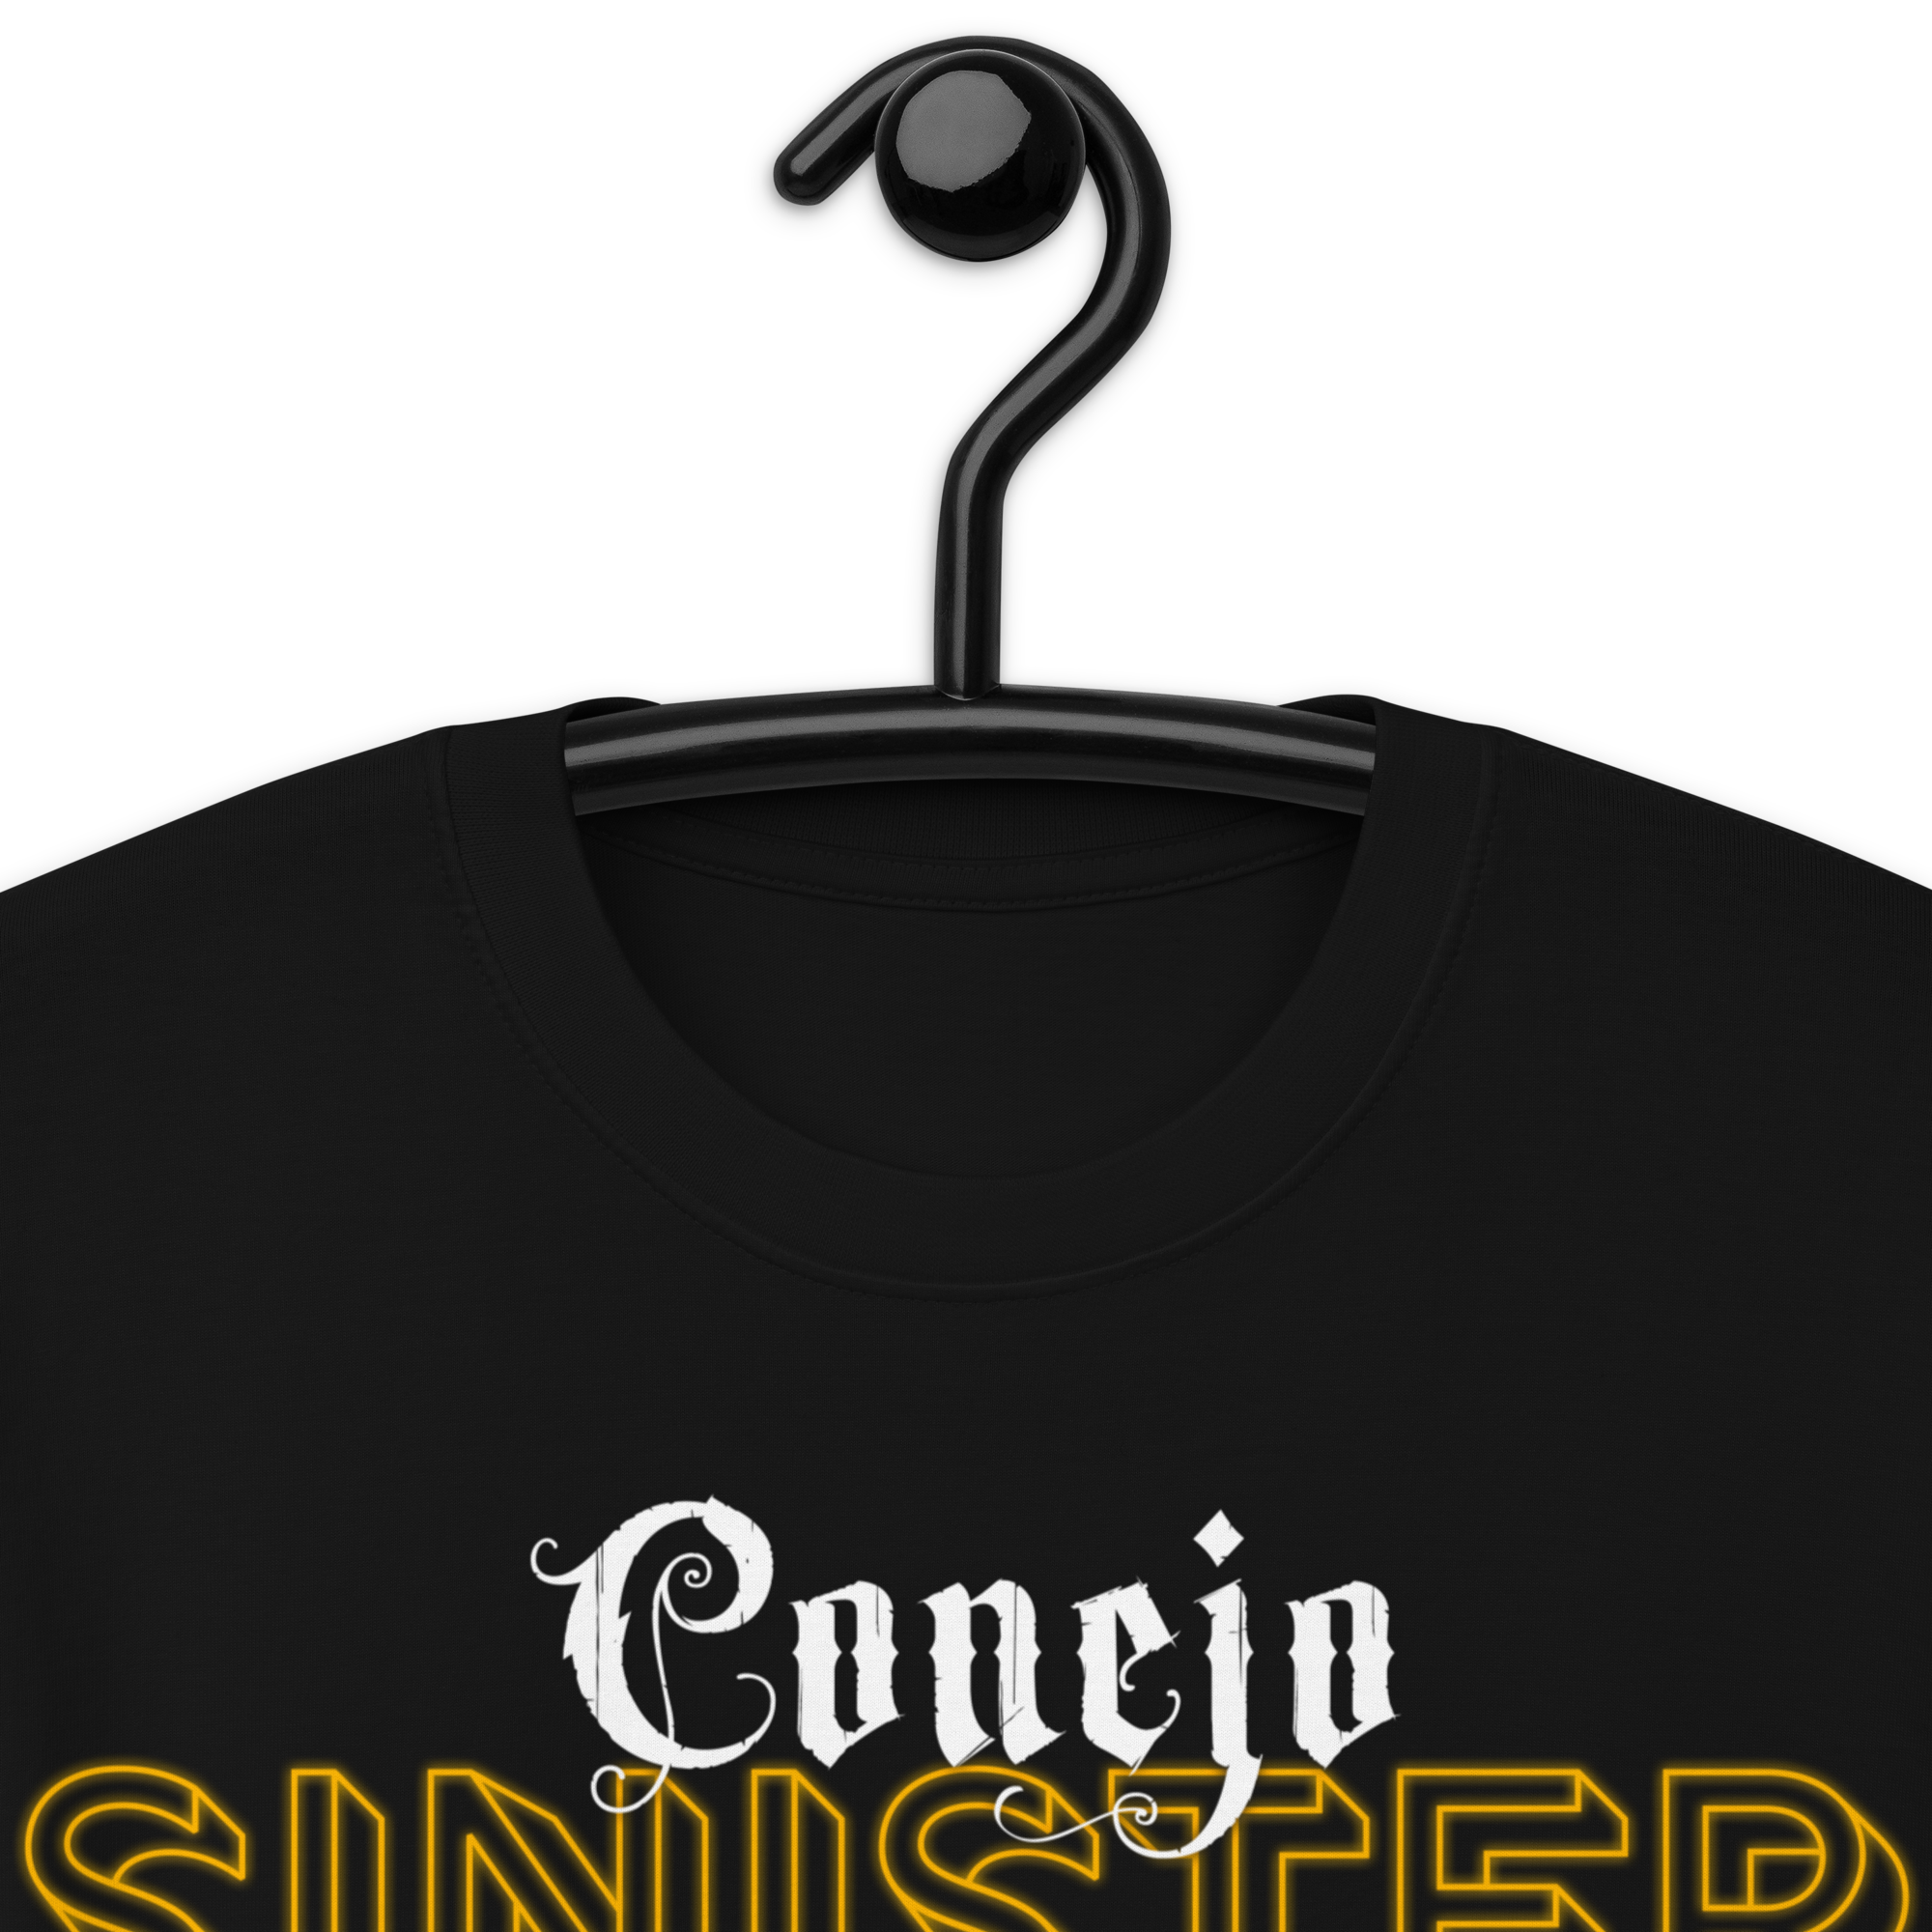 Conejo's Sinister Tour Tee